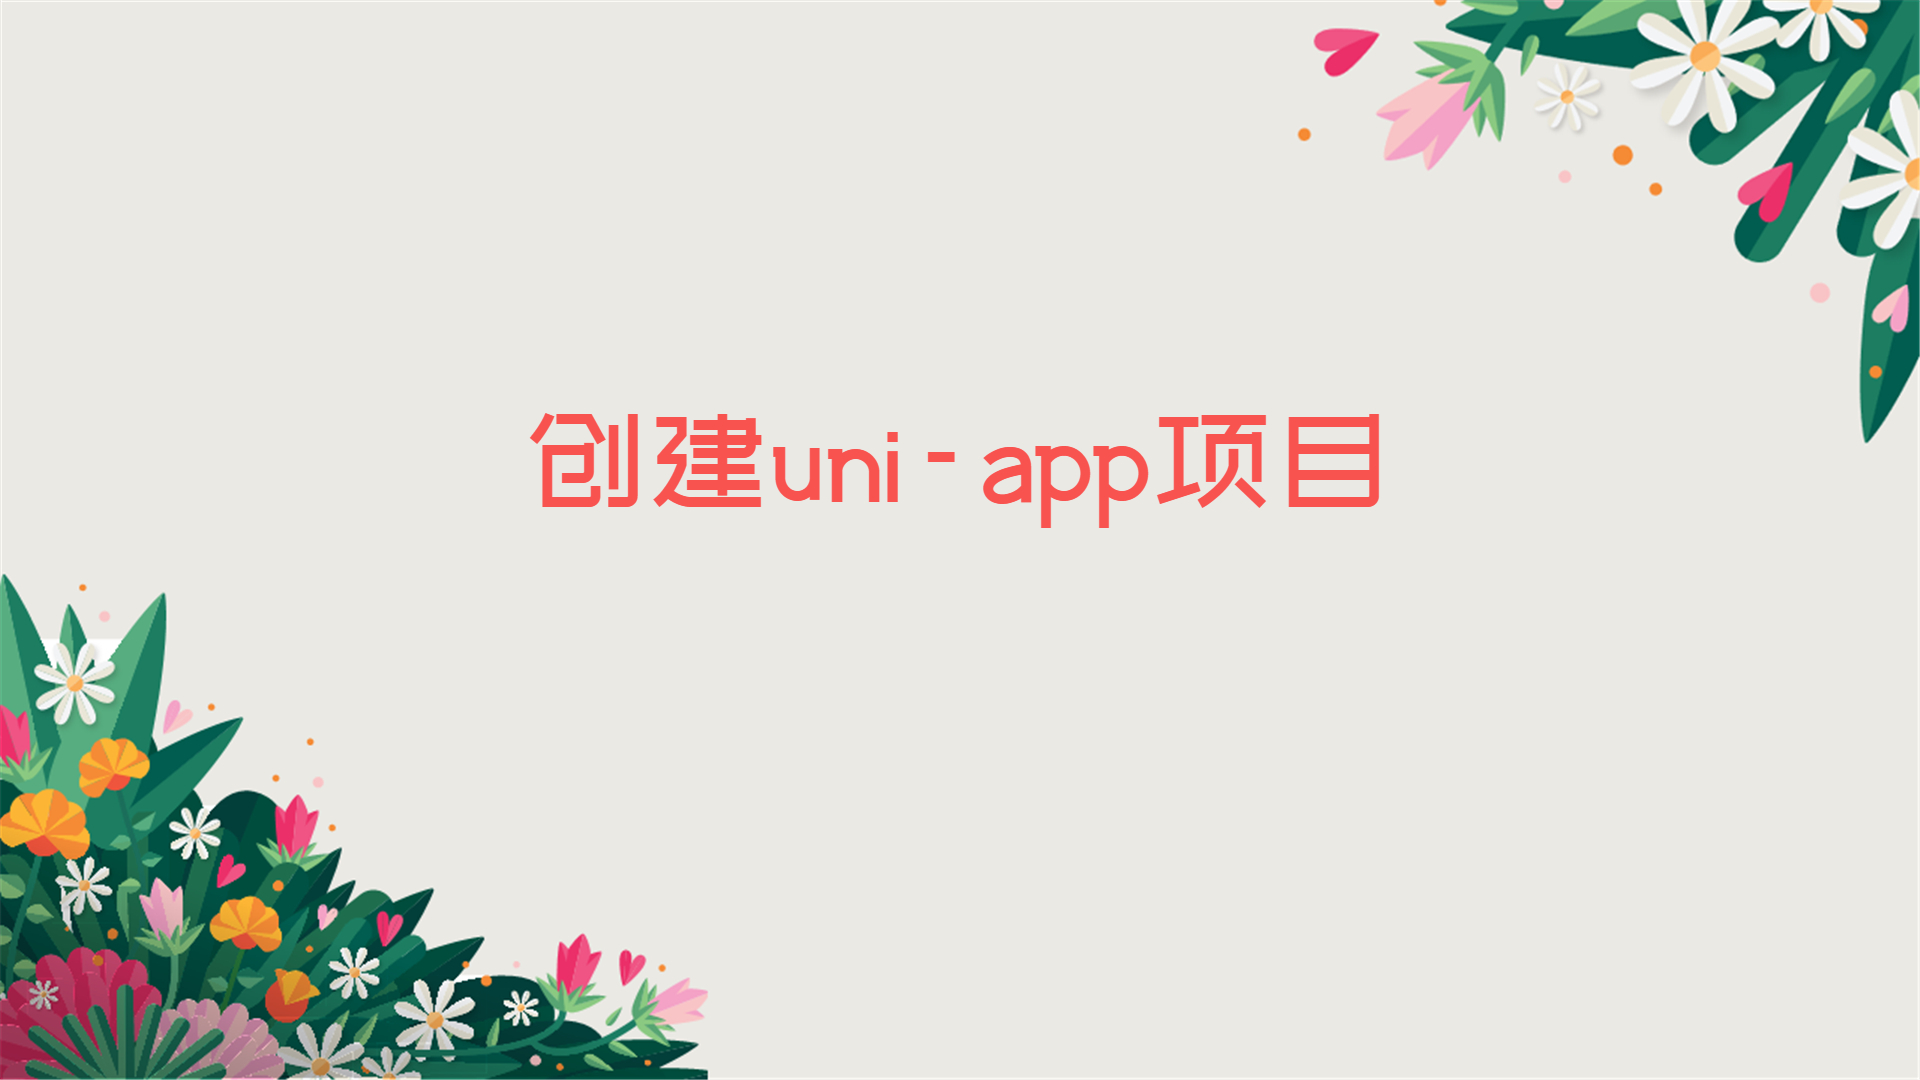 创建uni-app项目